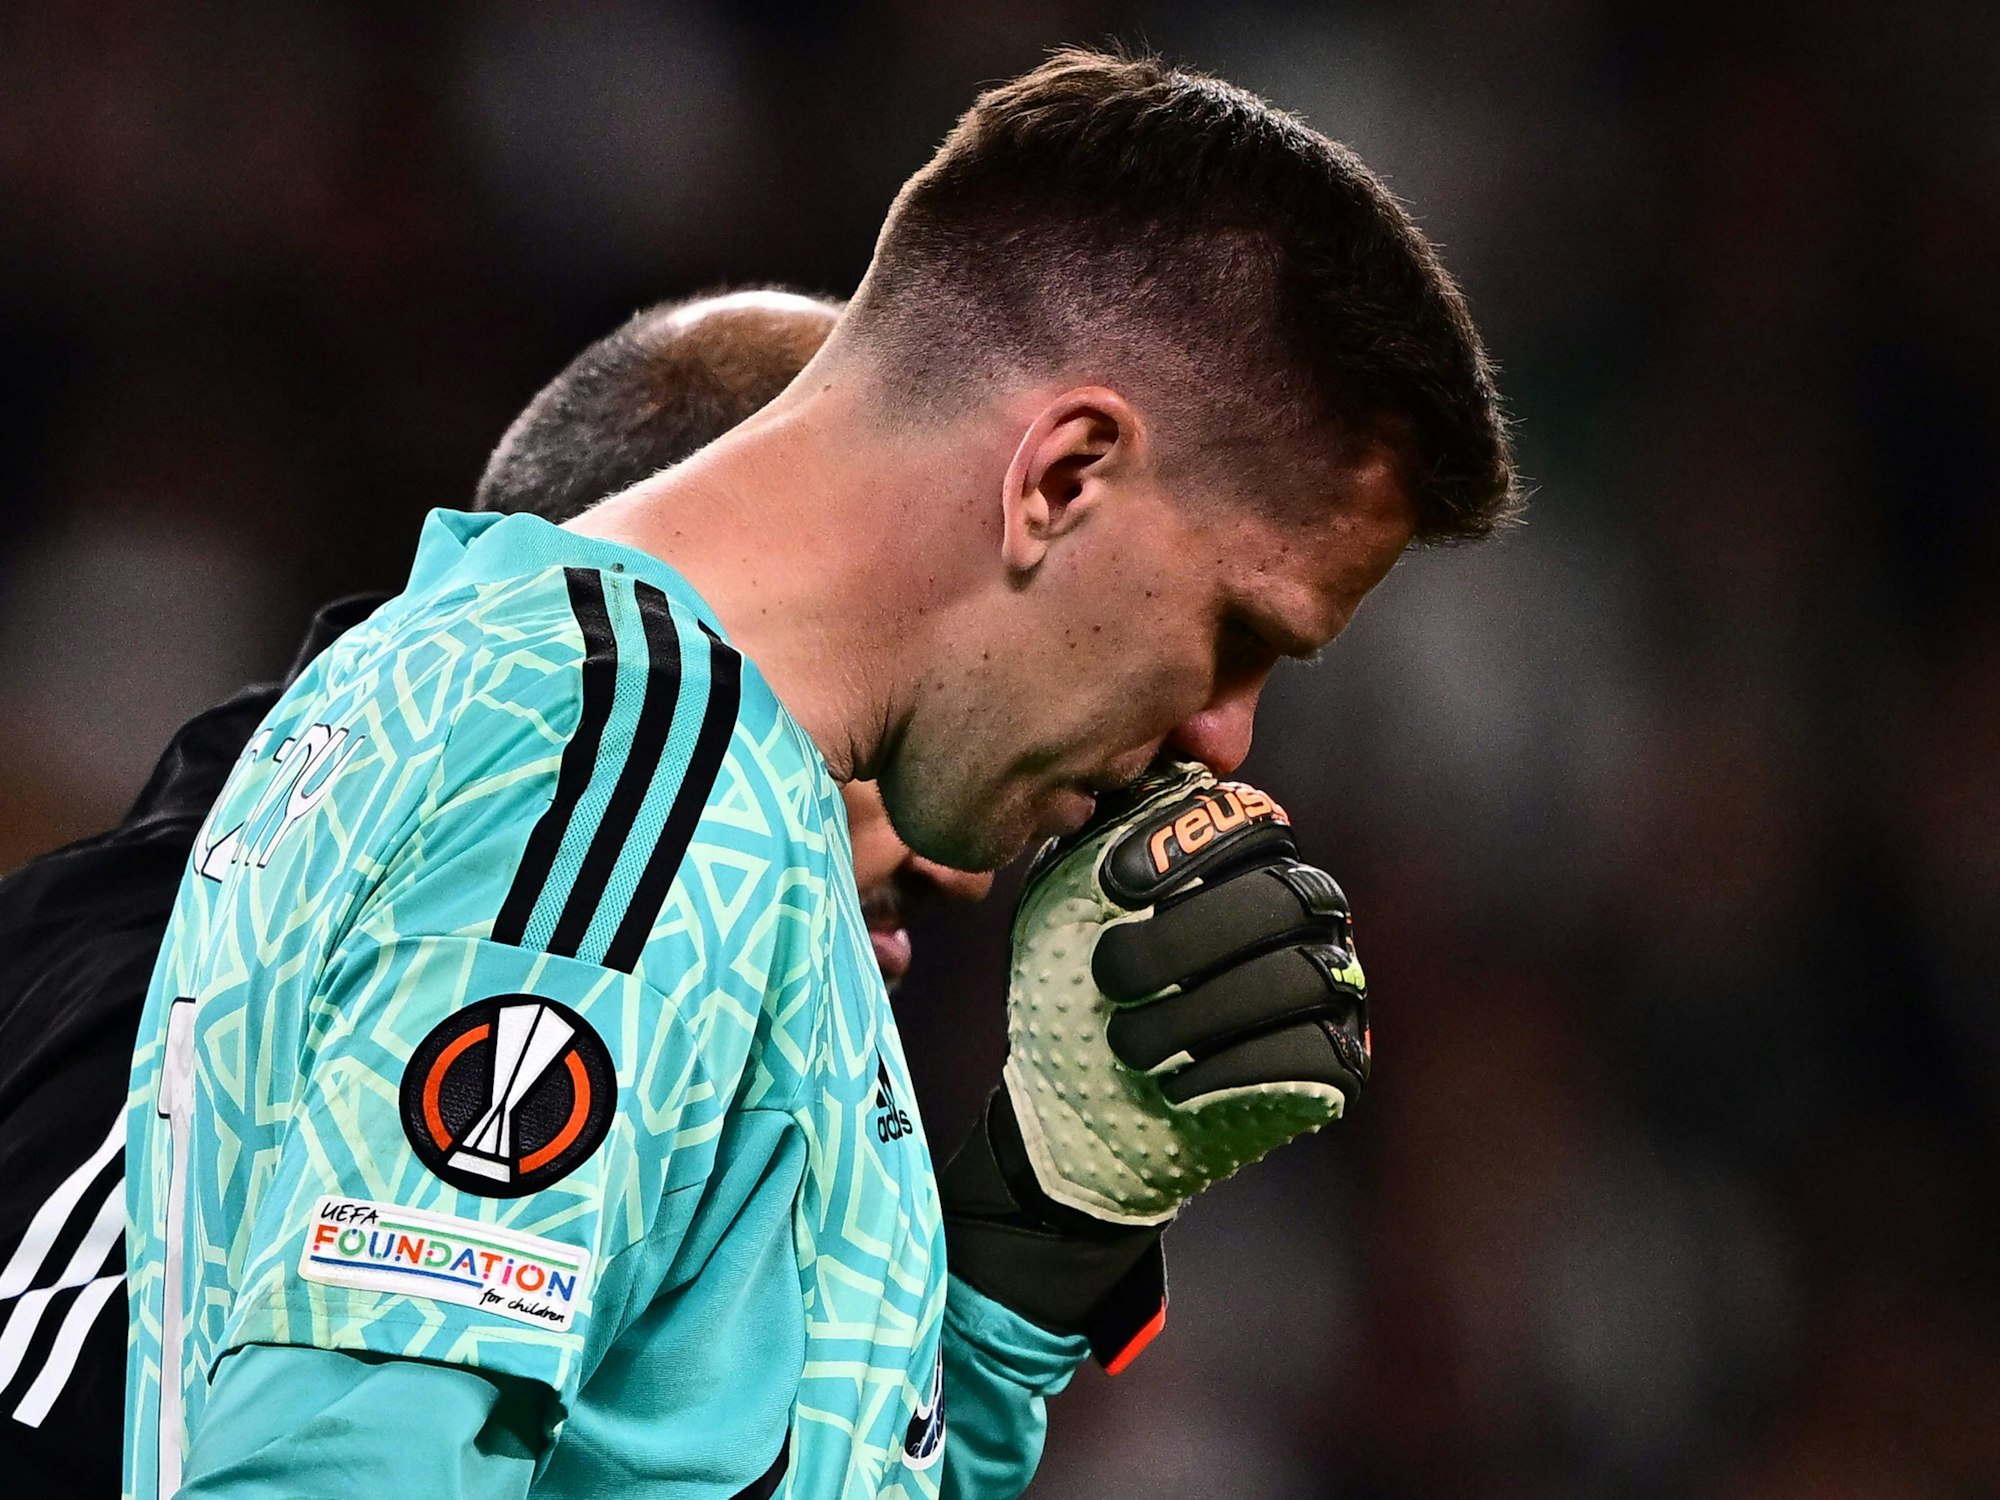 Wojciech Szczesny wird während der Europa-League-Partie zwischen Juventus Turin und Sporting Lissabon unter Tränen ausgewechselt.